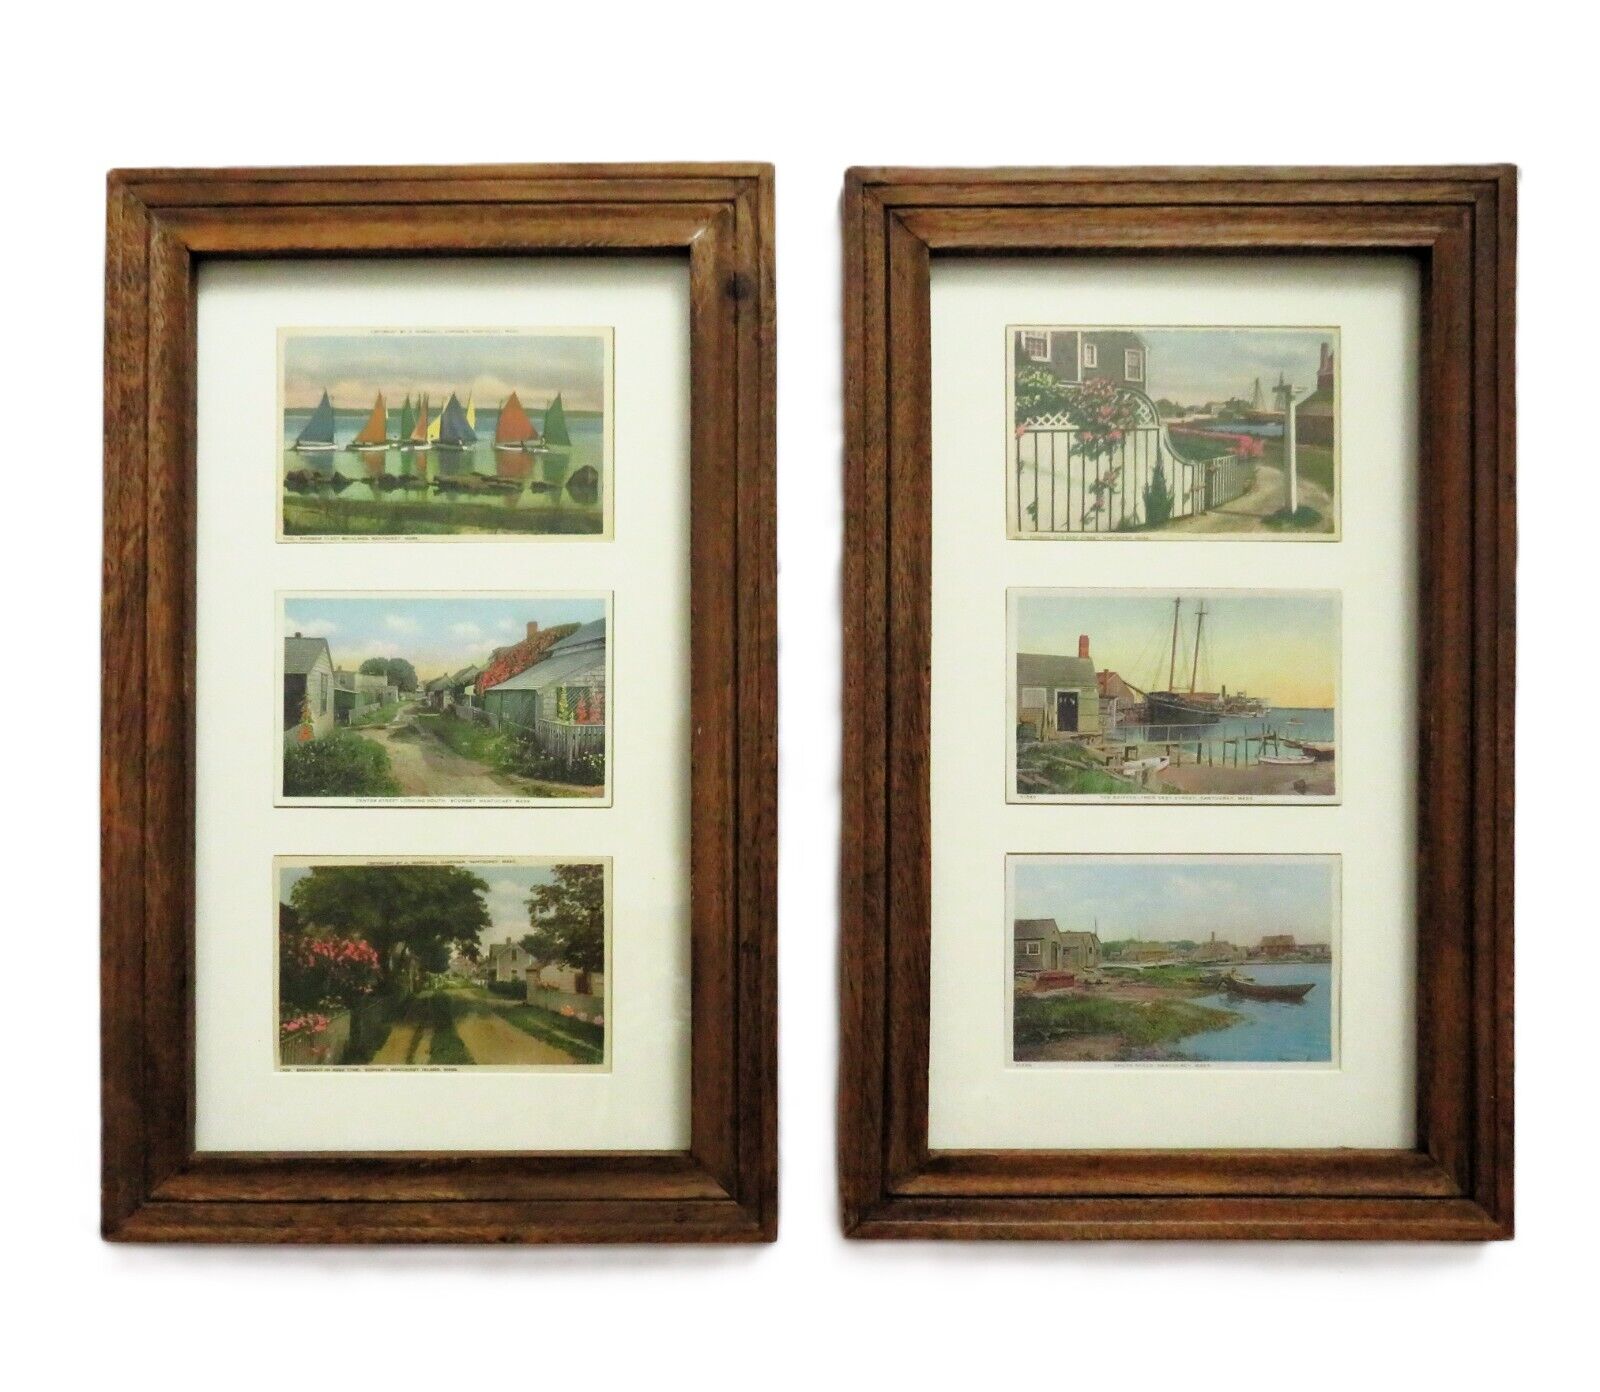 Set of 6 Vintage Coastal Nantucket Island Postcards Prints Framed c. 1940s